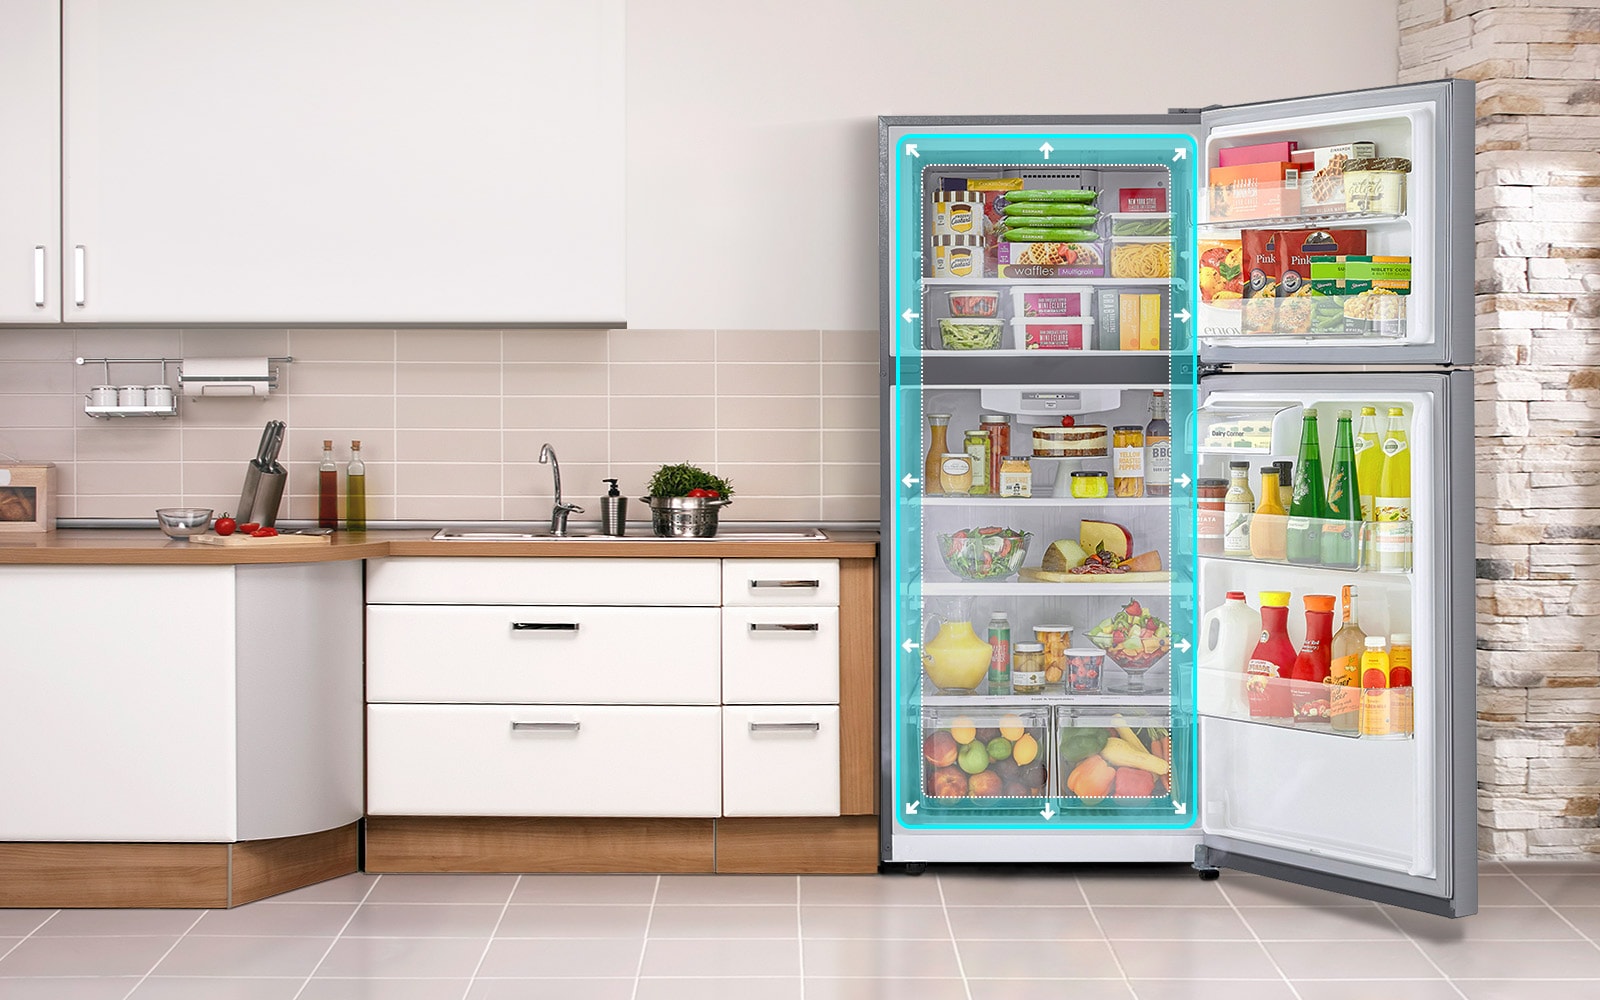 Se muestra un LG Top Freezer en una cocina con las puertas abiertas. Un cuadrado azul resaltado en el centro del refrigerador se expande al tamaño del refrigerador para mostrar que tiene más espacio.